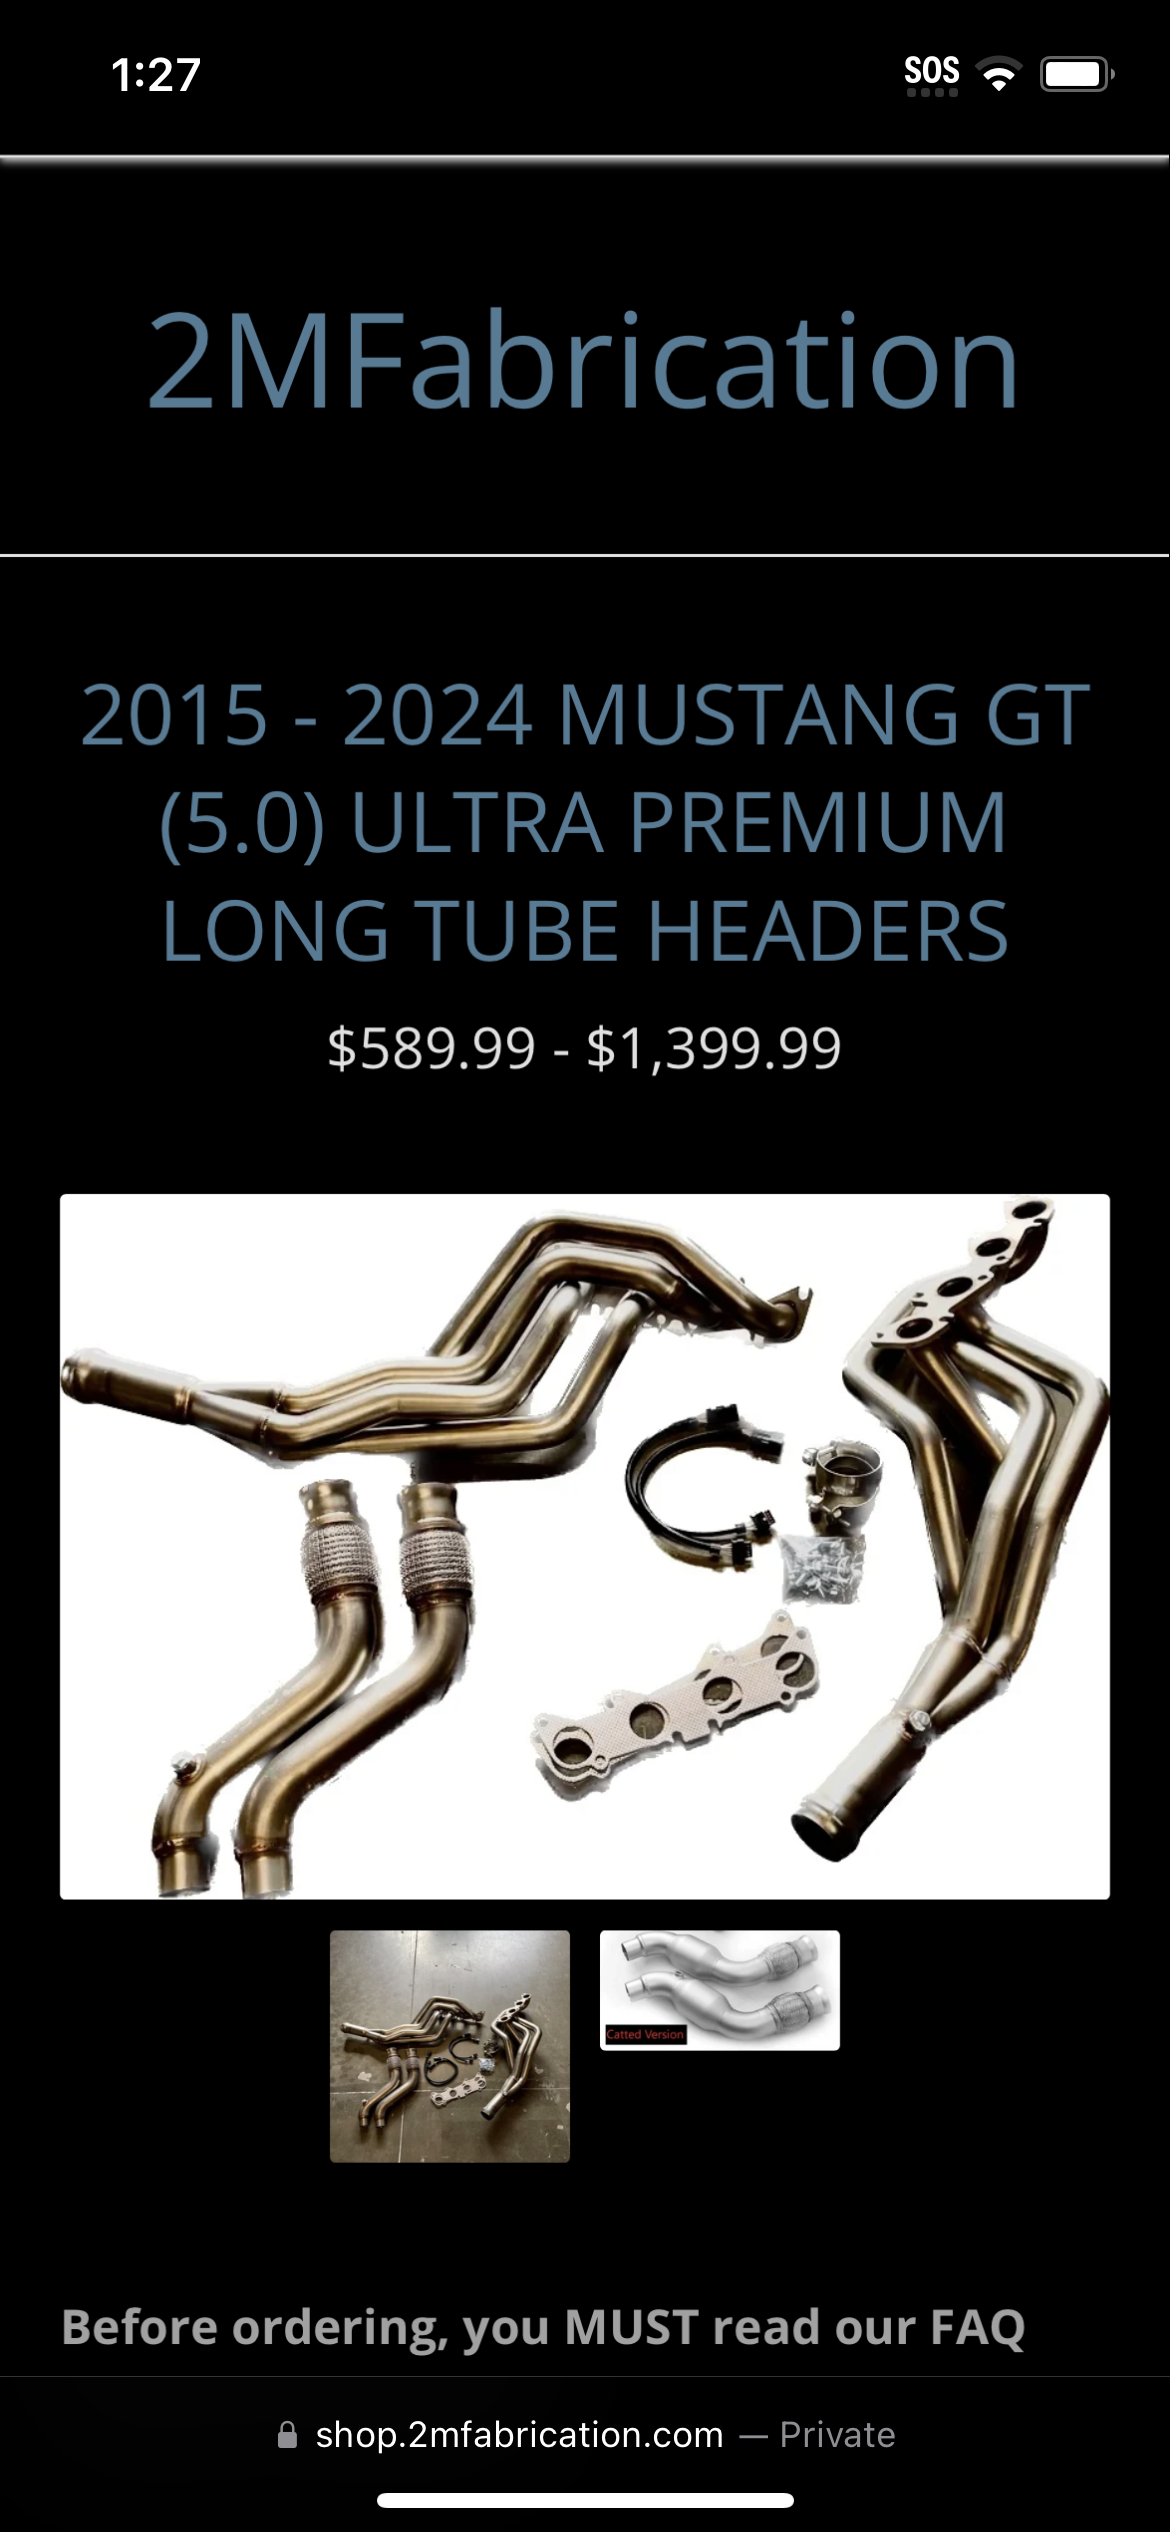 S650 Mustang Long Tube Headers IMG_0013